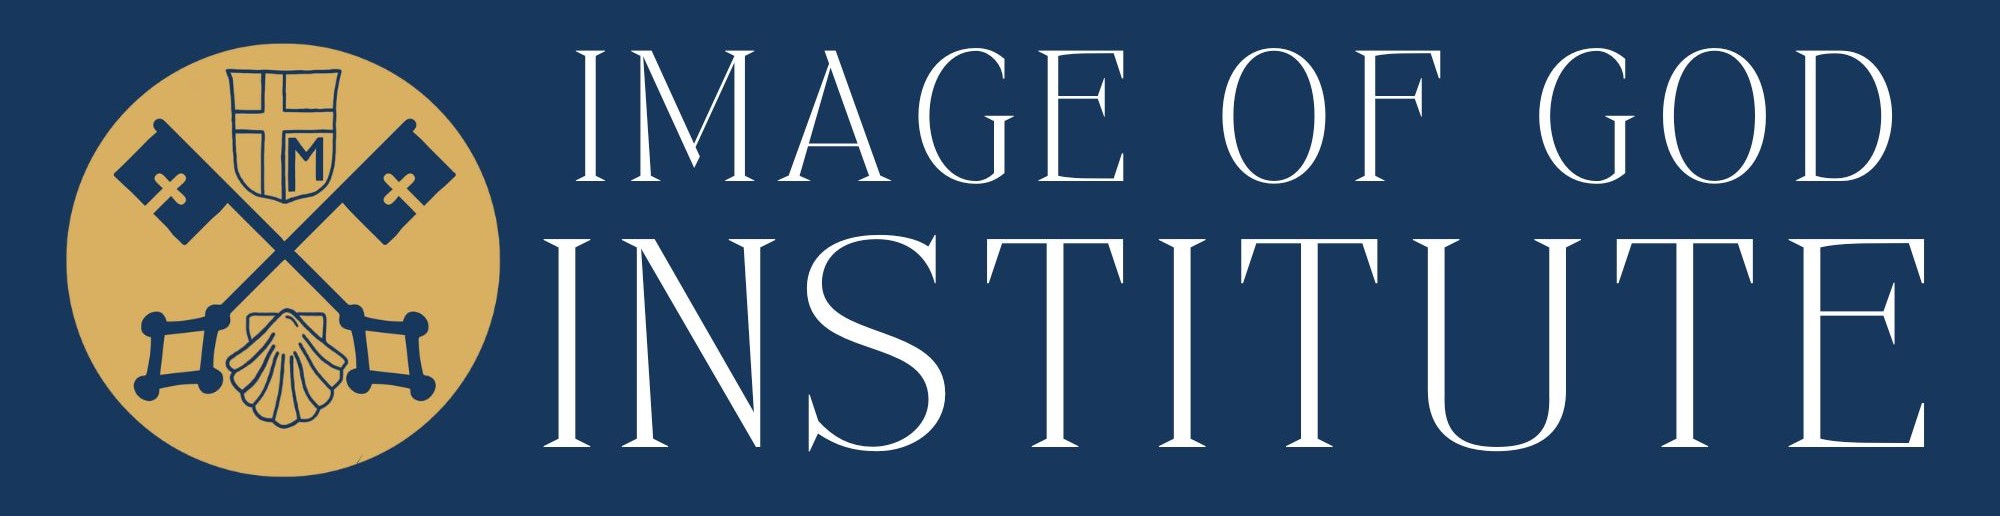 Image of God Institute